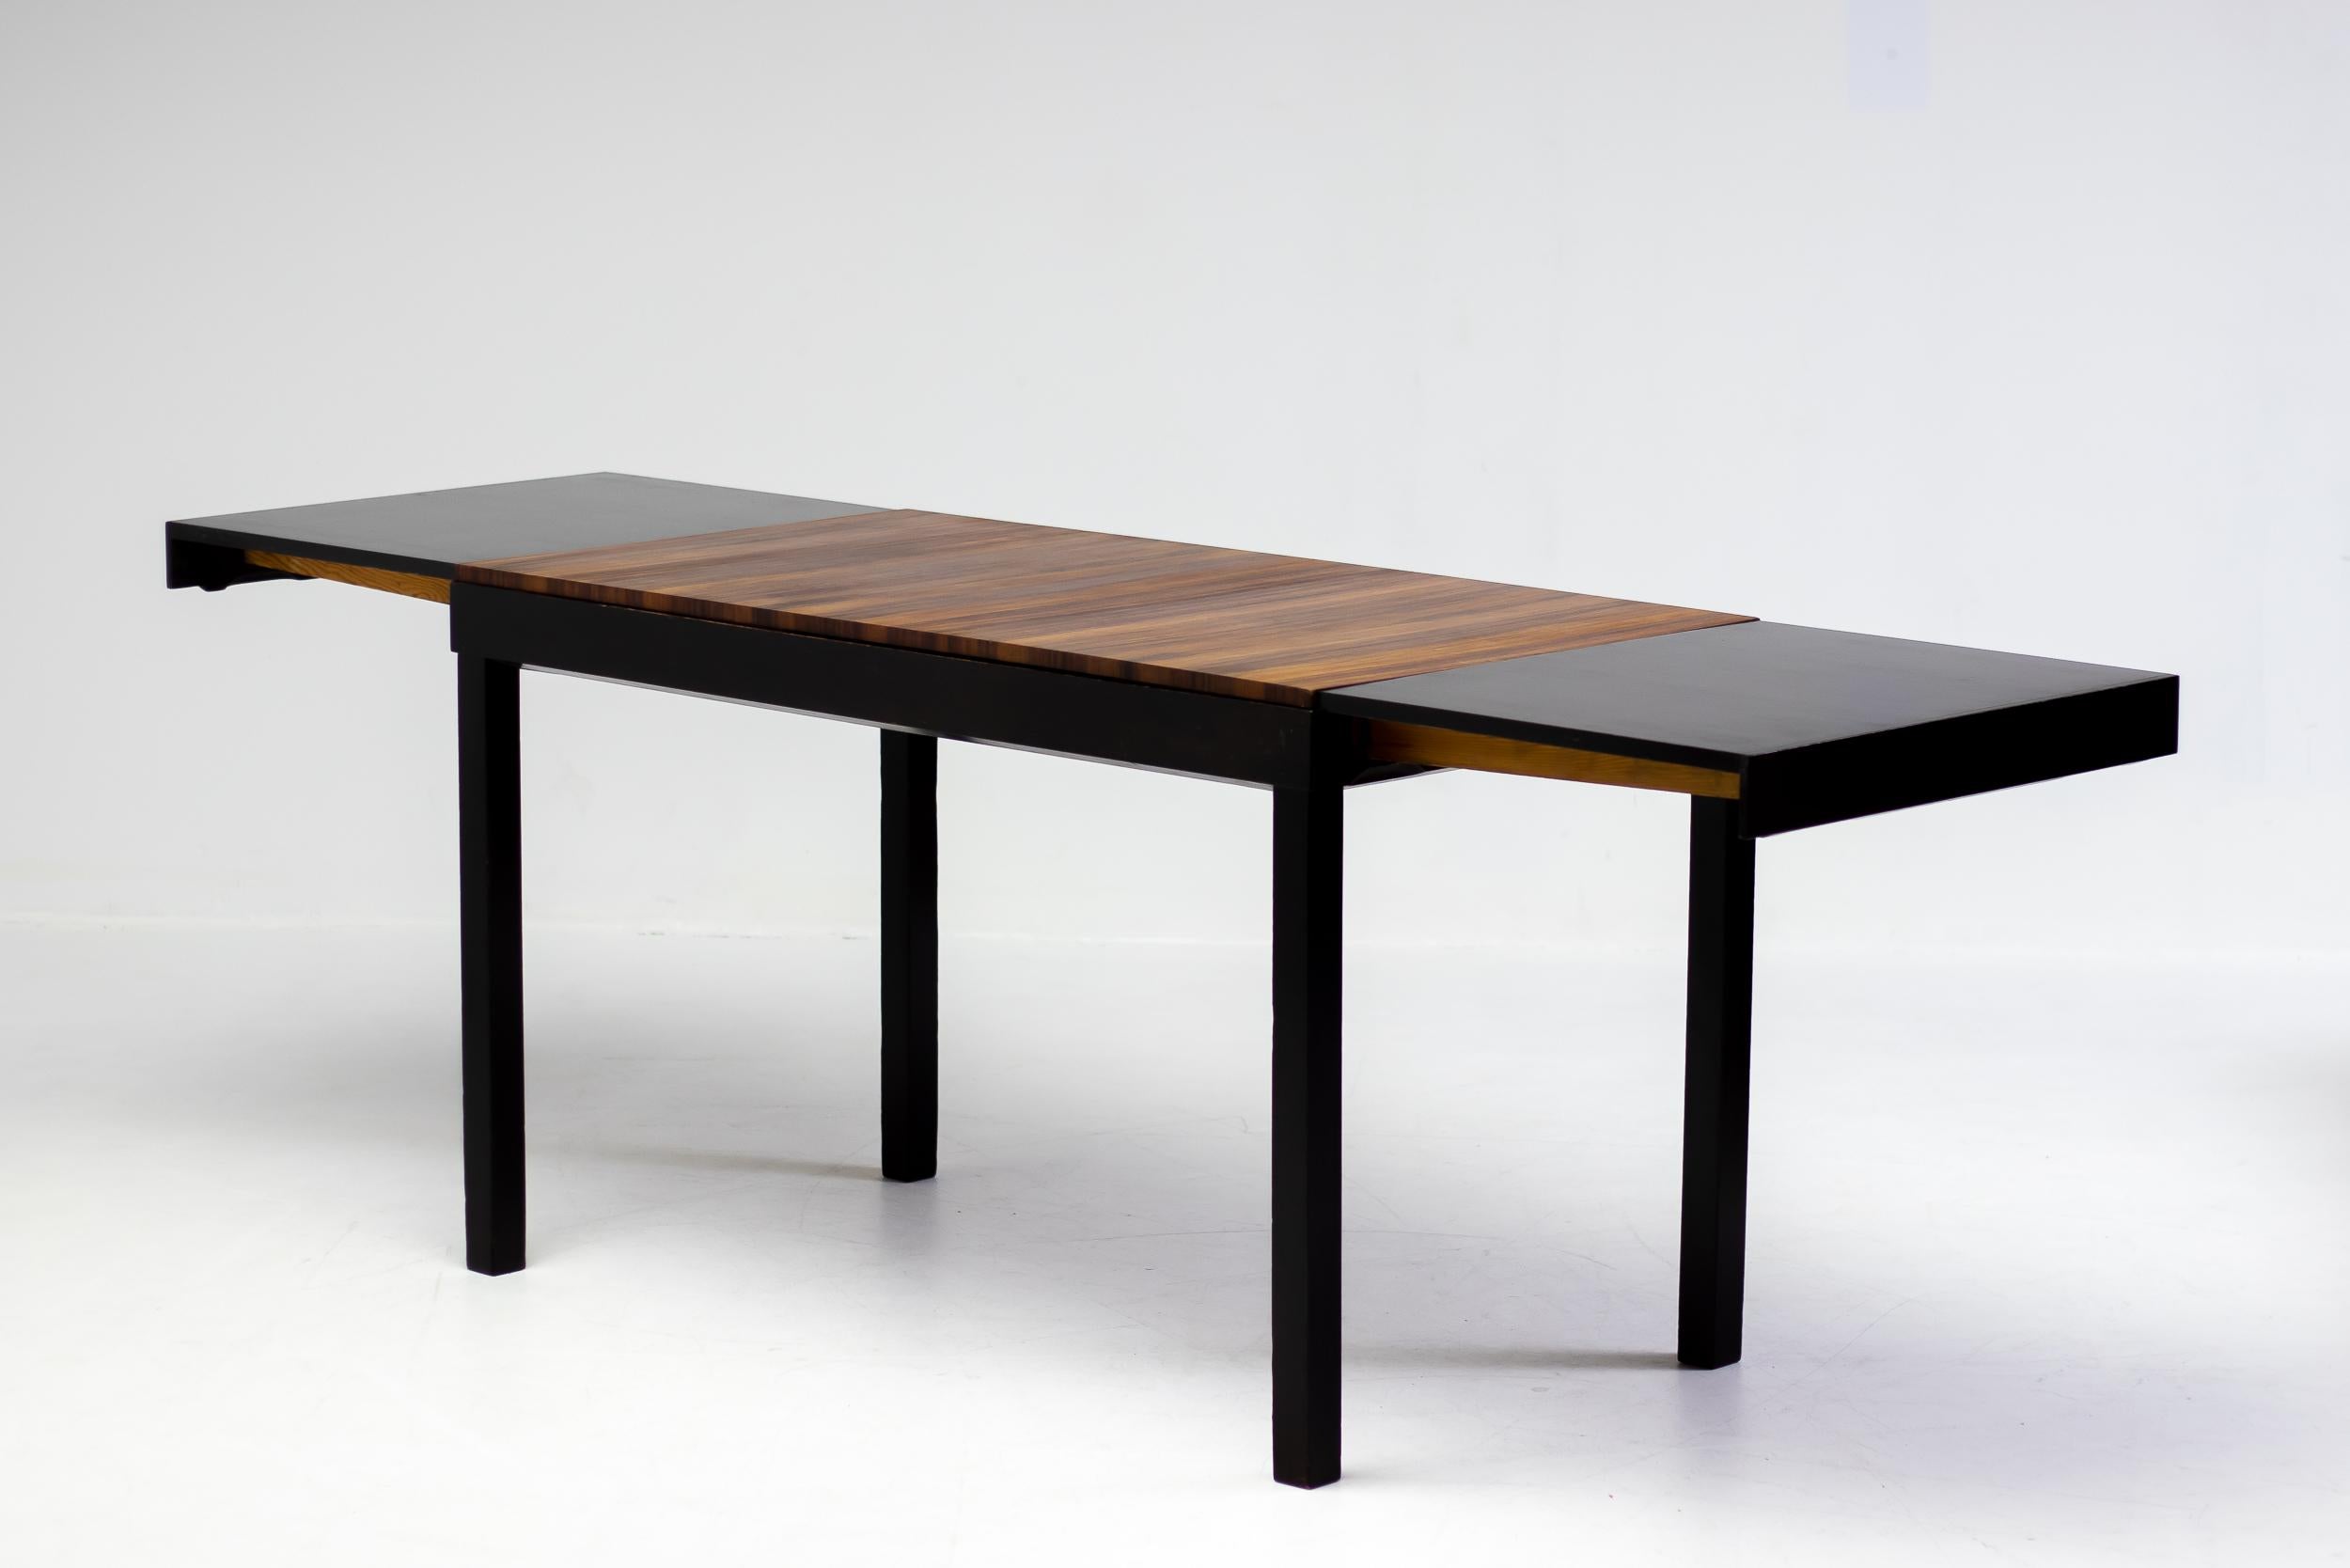 Scandinavian Modern Axel Einar Hjorth Extendable Table, Macassar, 1930 For Sale